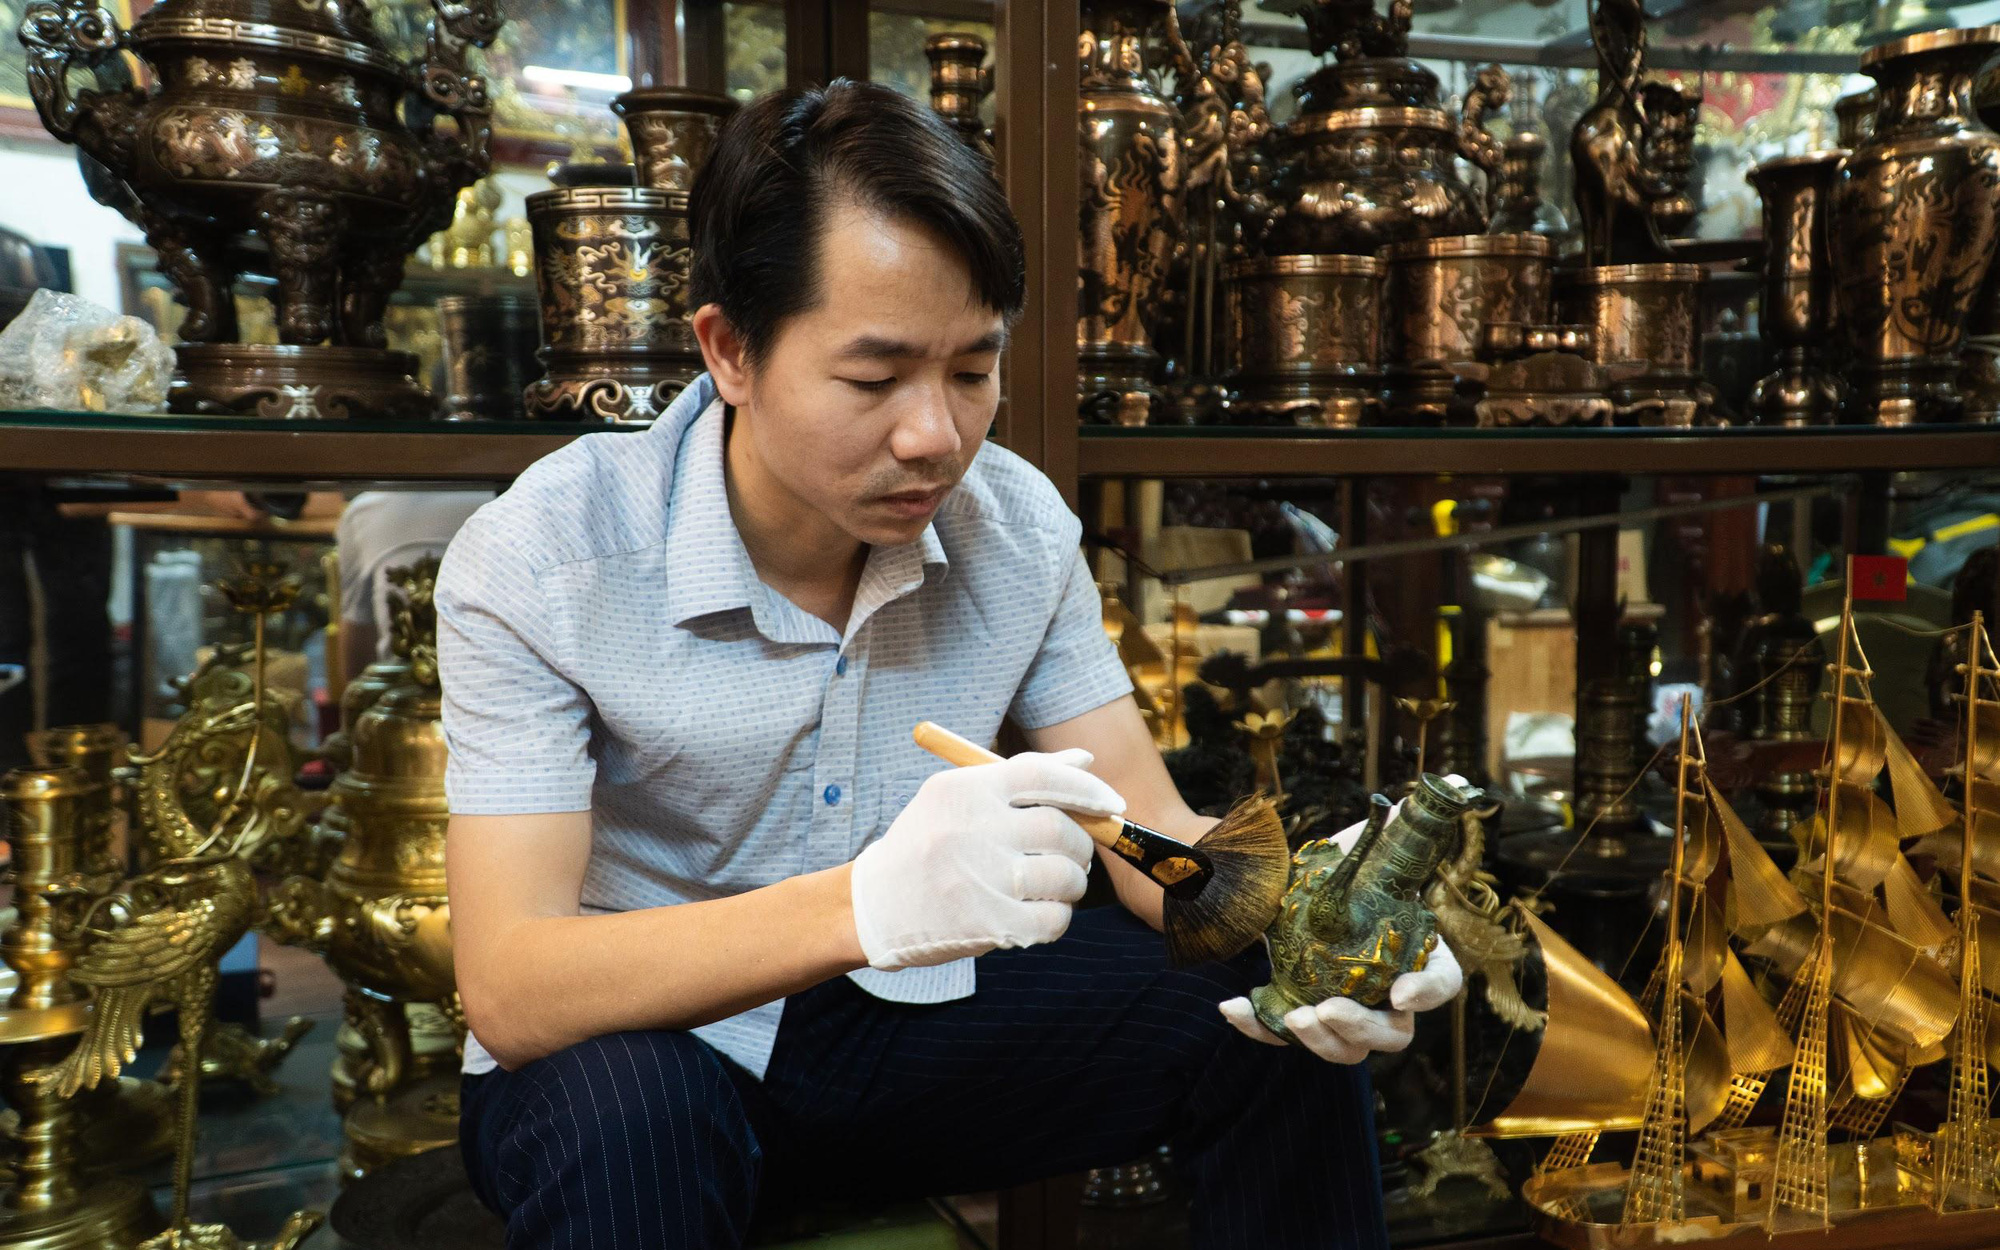 CEO Đinh Lâm Tới và King Gold Art phát triển dòng quà tặng vàng cao cấp Việt Nam